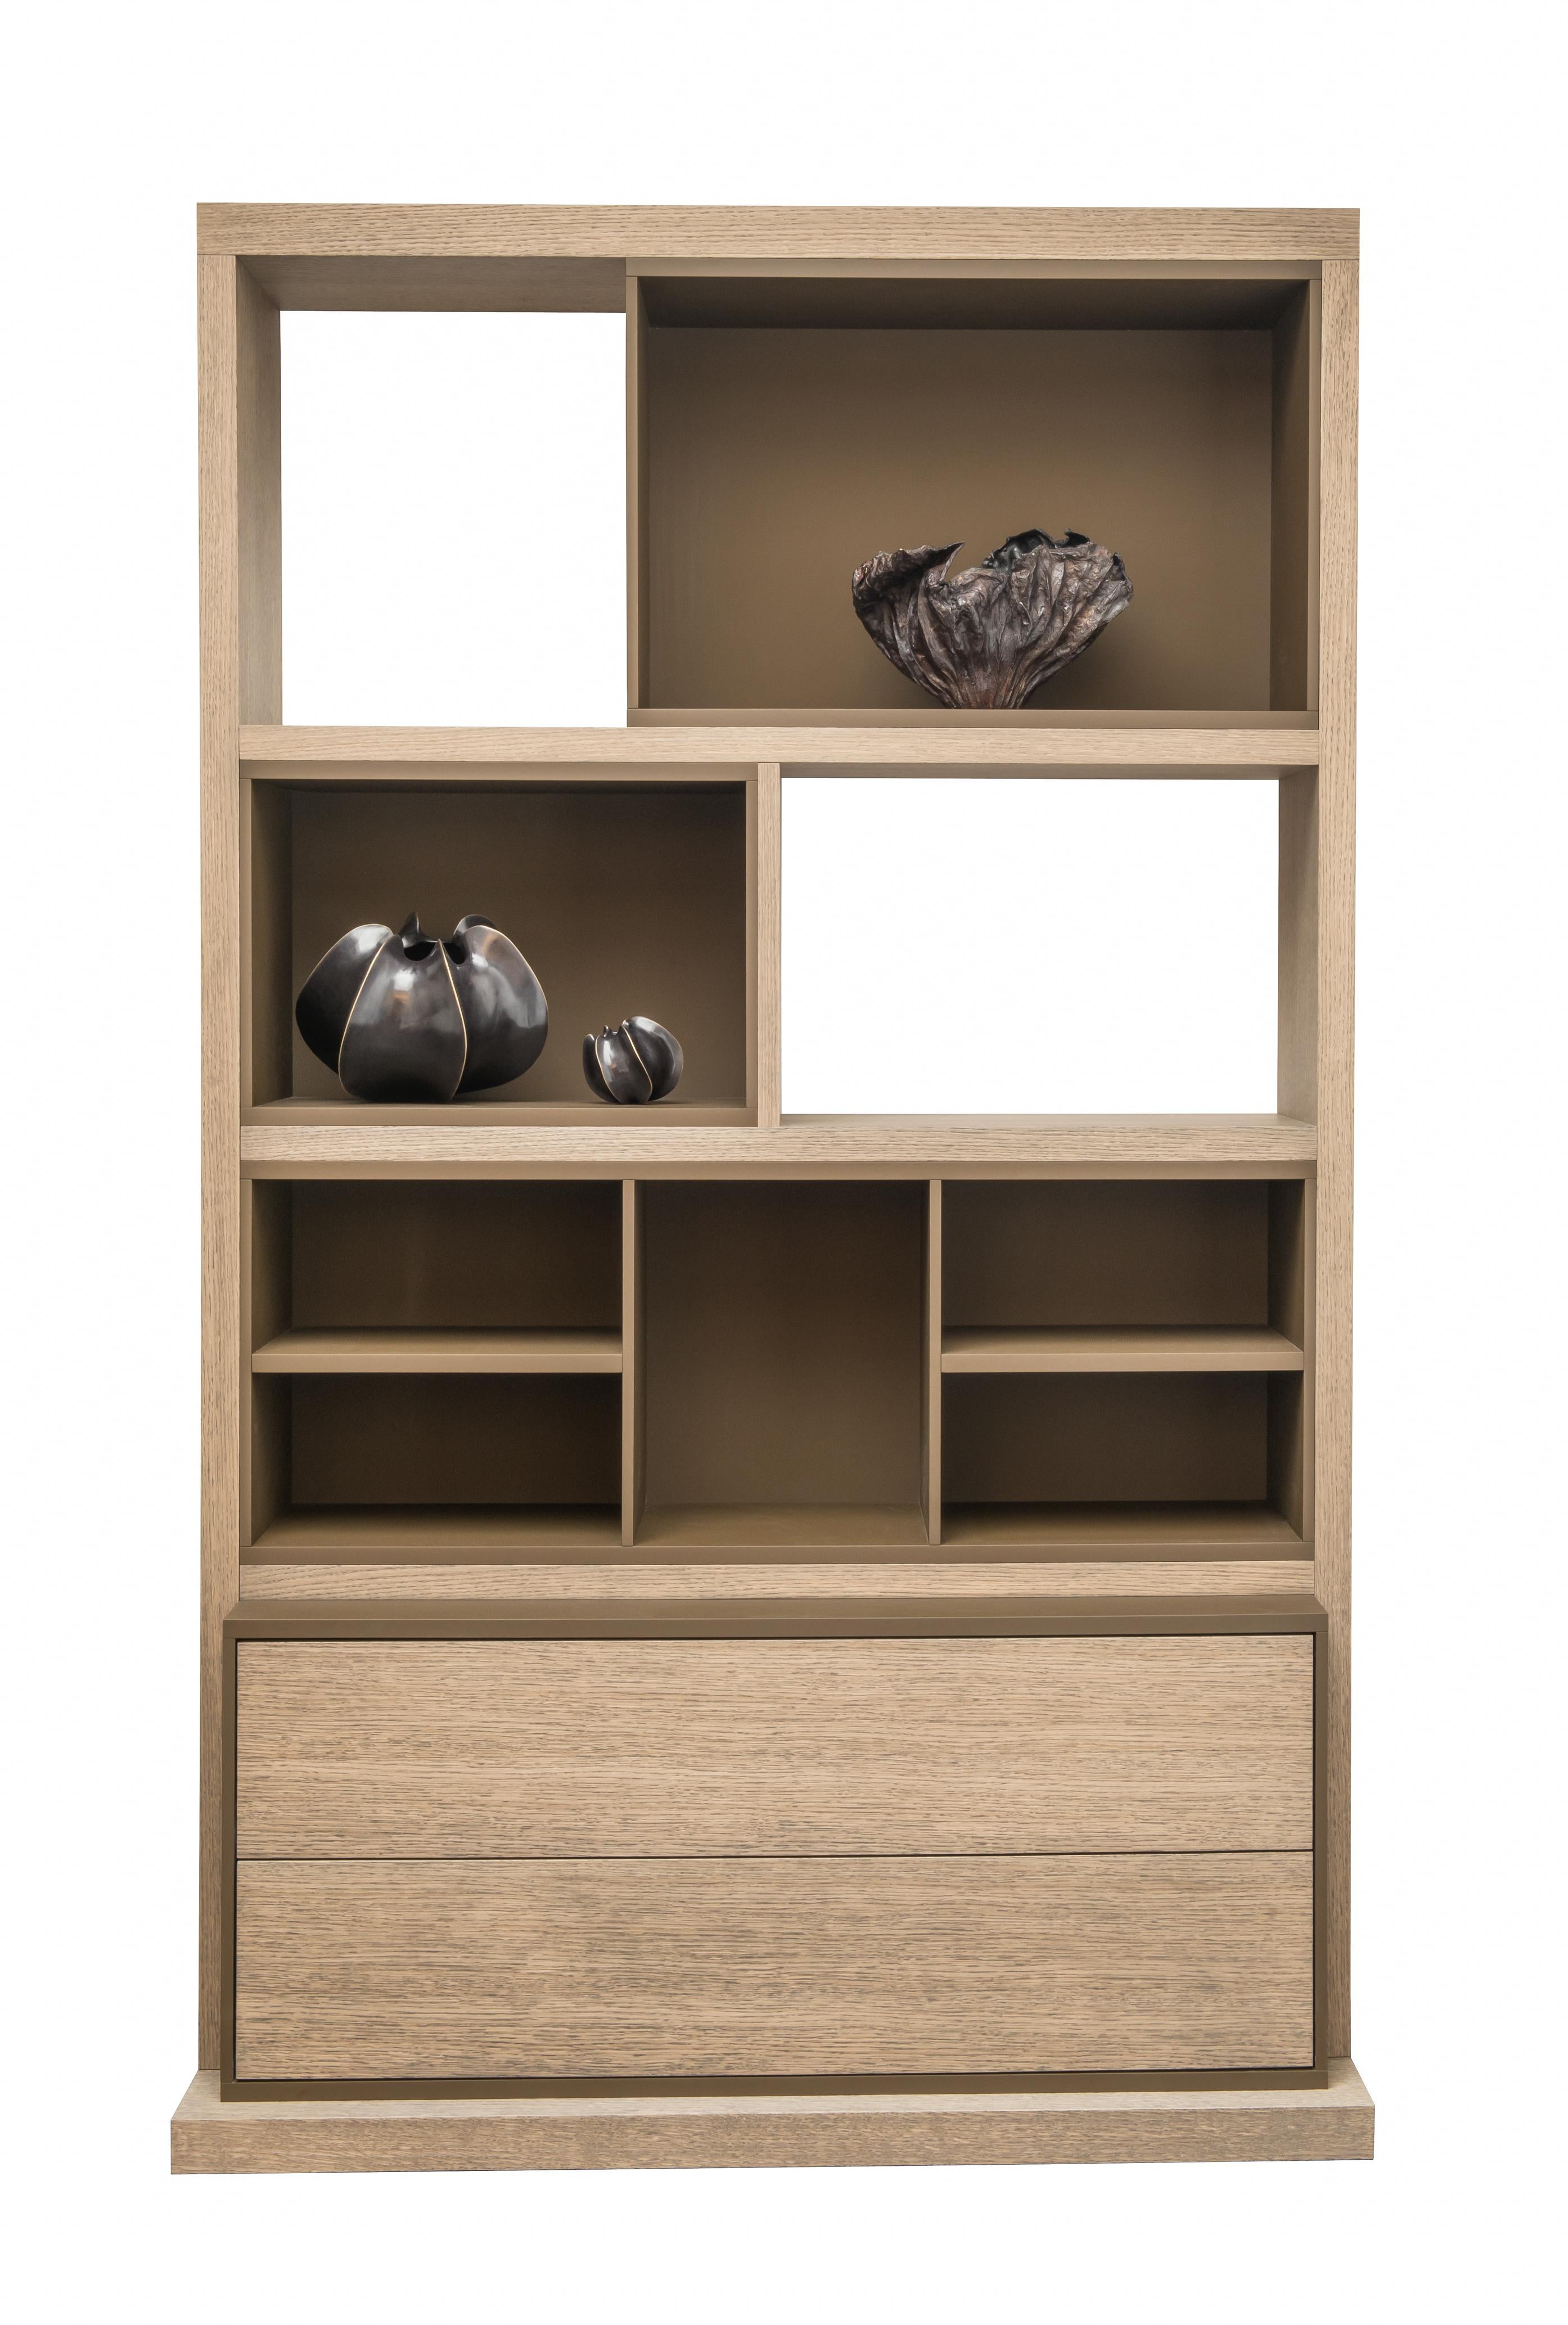 Das Bücherregal ist ein Entwurf des Kollektivs Atelier Linné. Die Regalböden sind aus Eiche und der Boden aus Mattlack. Es zeichnet sich sowohl durch seine symmetrischen als auch asymmetrischen Seiten aus und verfügt über zwei Schubladen in der